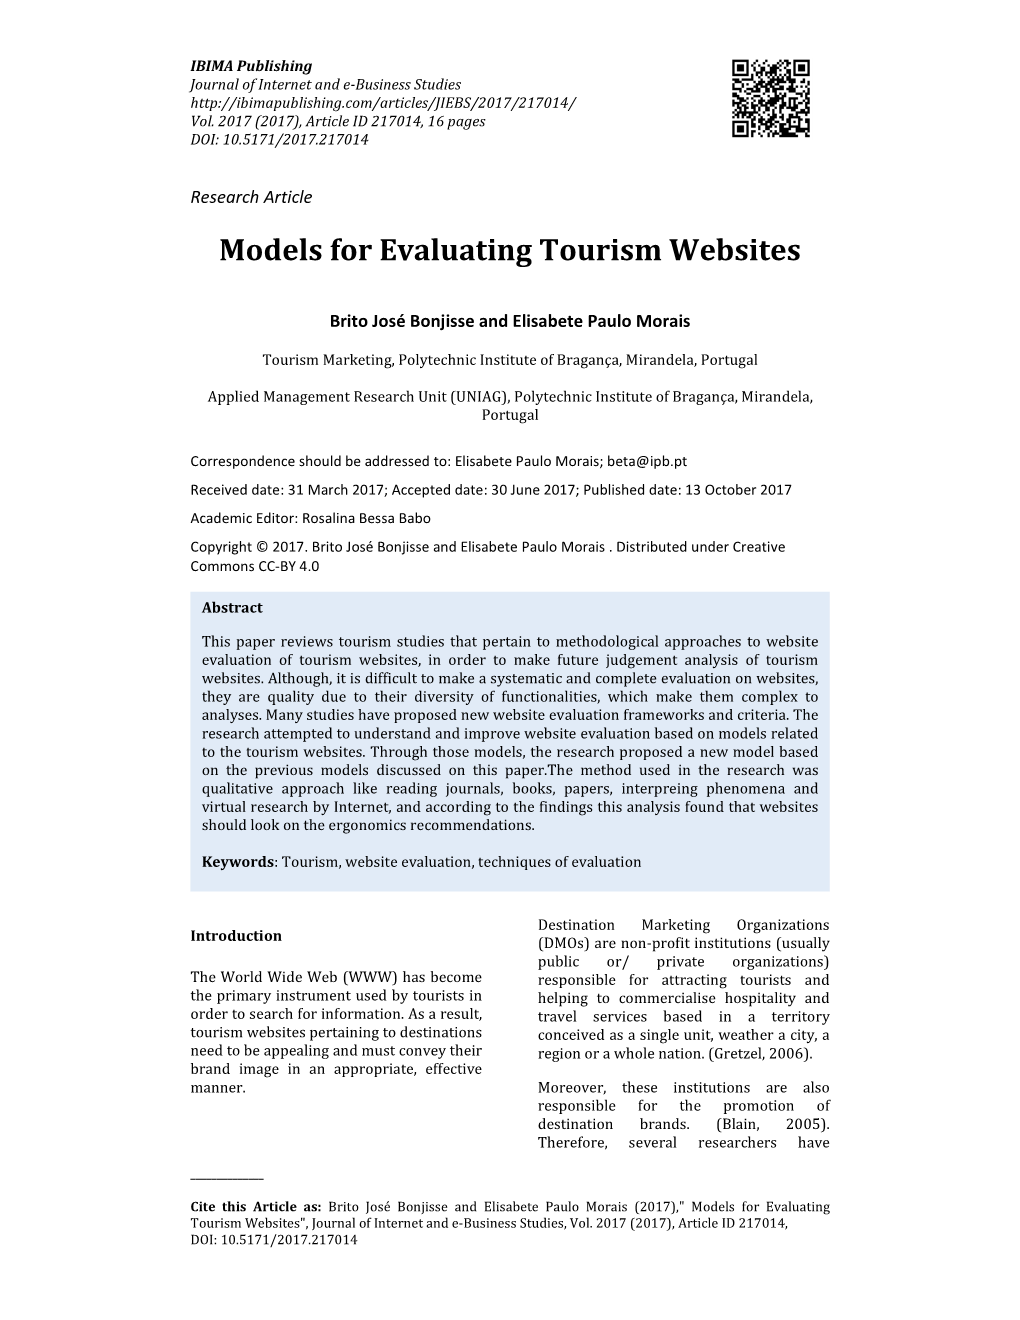 Models for Evaluating Tourism Websites